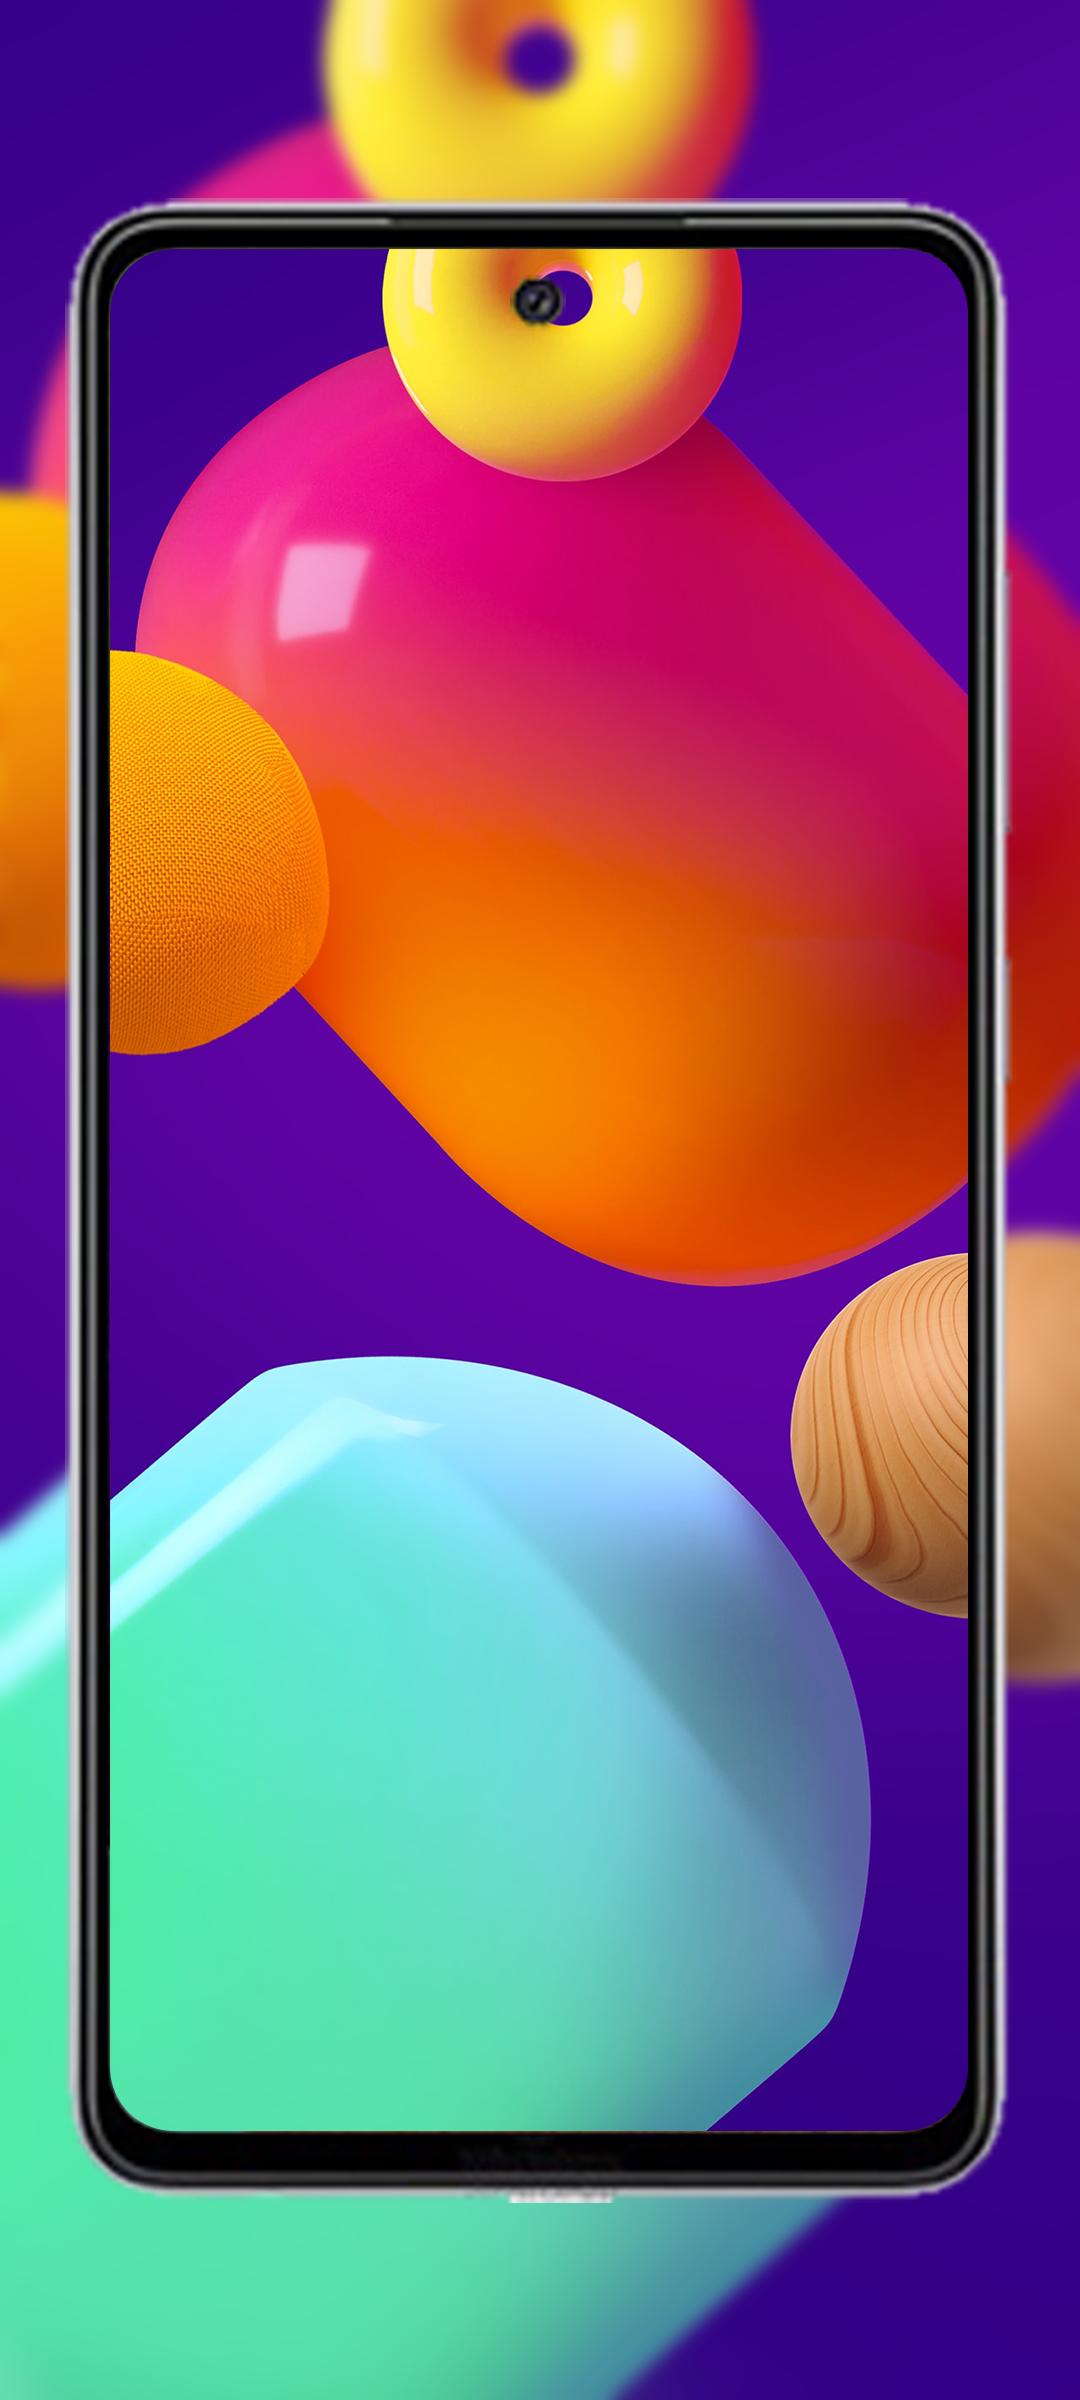 Bạn đang sở hữu chiếc điện thoại Samsung Galaxy M52 M53 nhưng chưa tìm được mẫu hình nền phù hợp? Đừng lo, với APK Hình nền Samsung Galaxy M52 M53, bạn sẽ có ngay những hình ảnh đẹp, bắt mắt và tương thích với smartphone của mình.